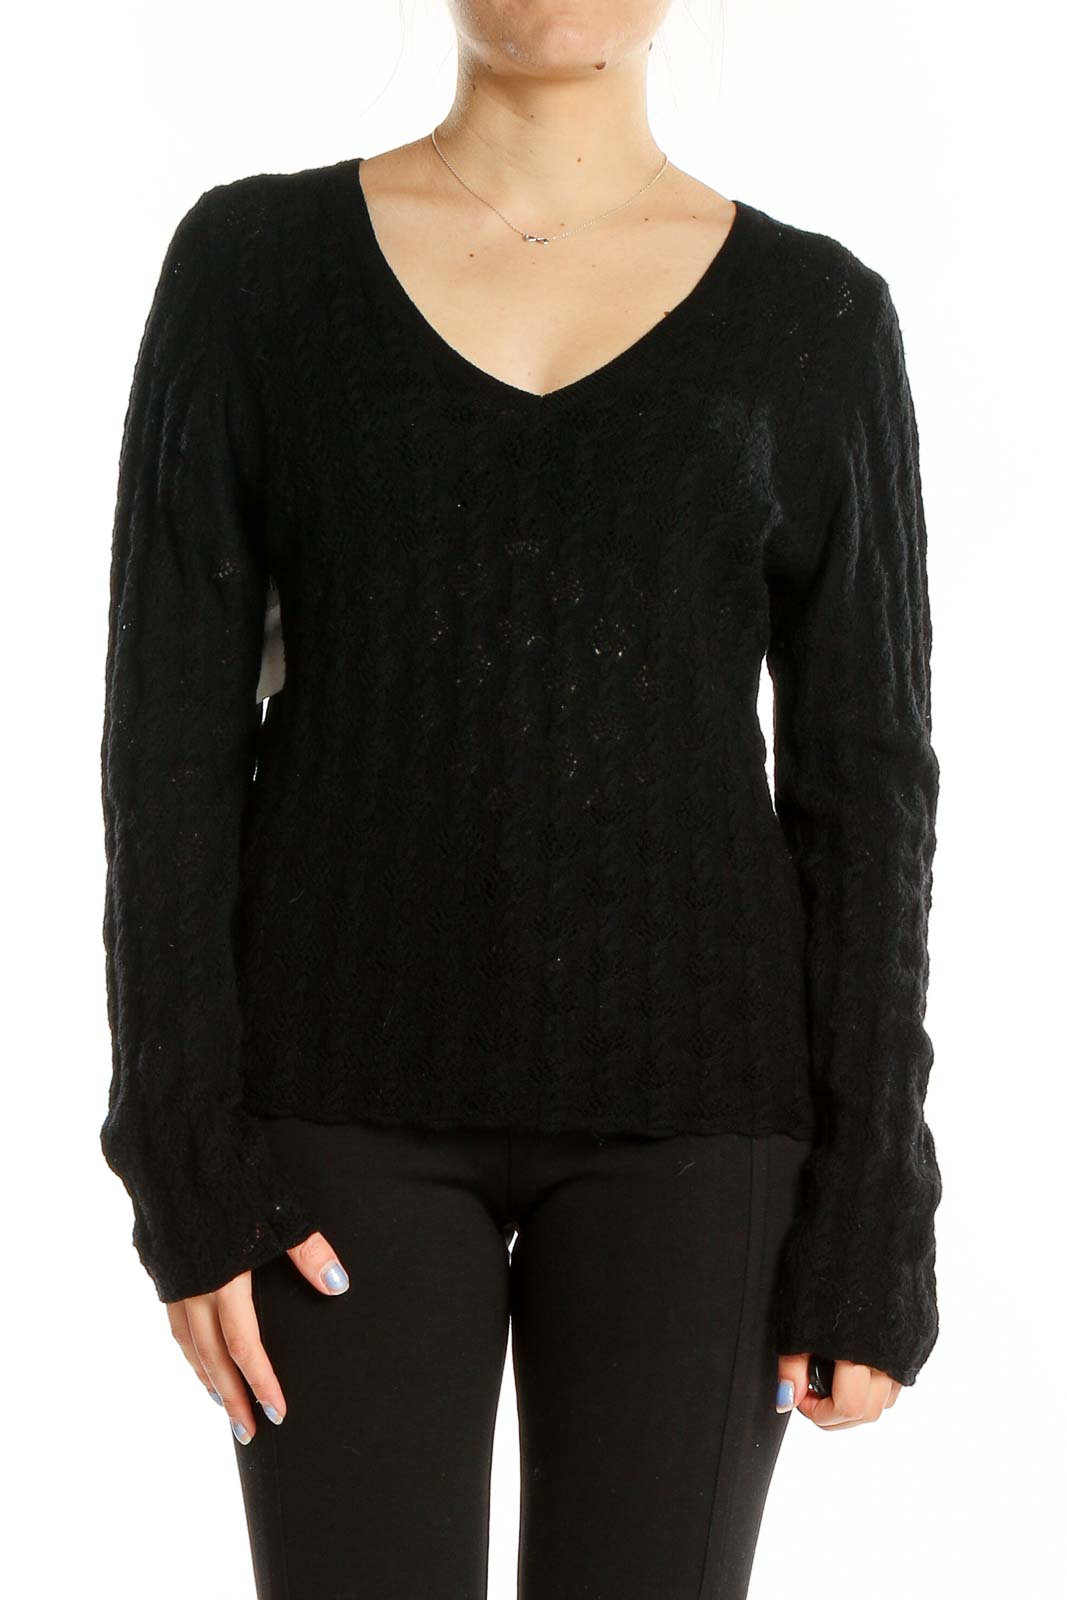 Black Long Sleeve Merino Wool Top Front